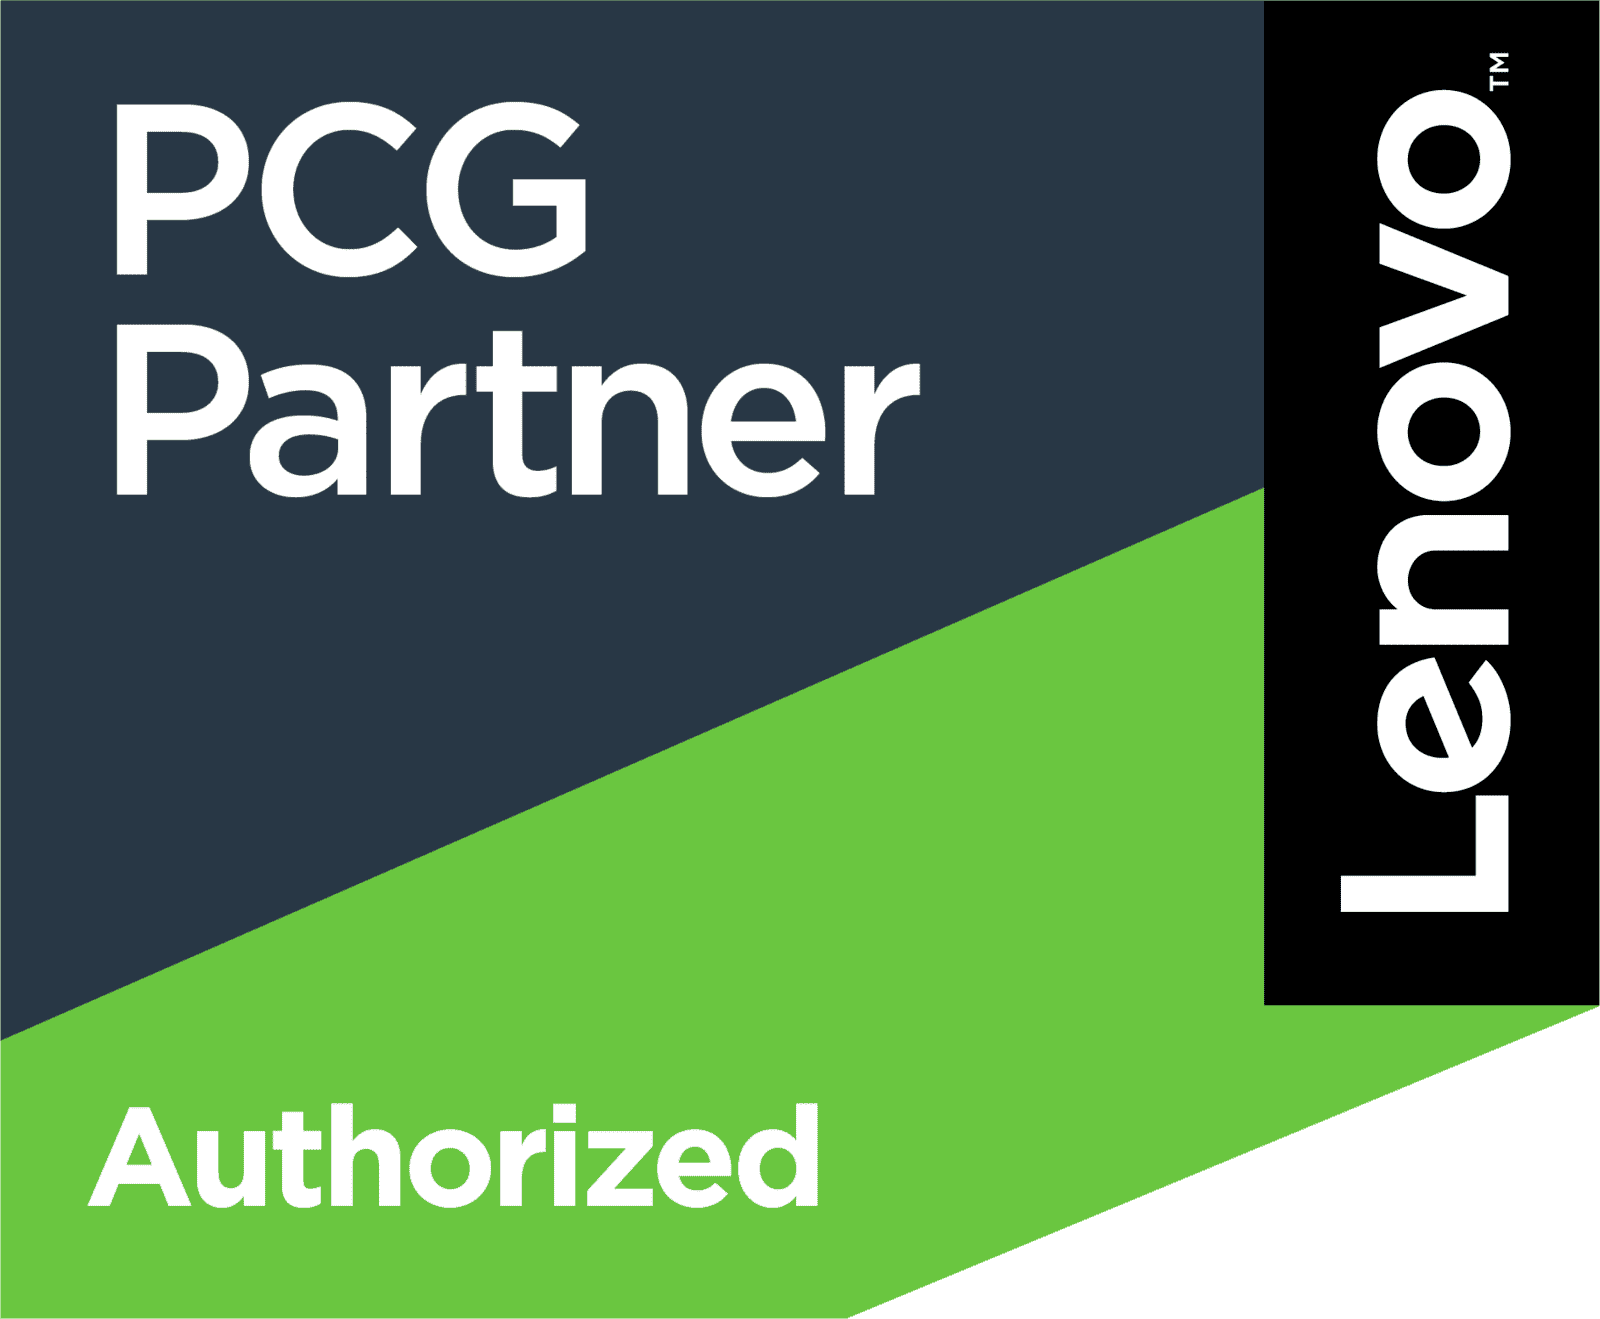 lenovo authorized partner logo